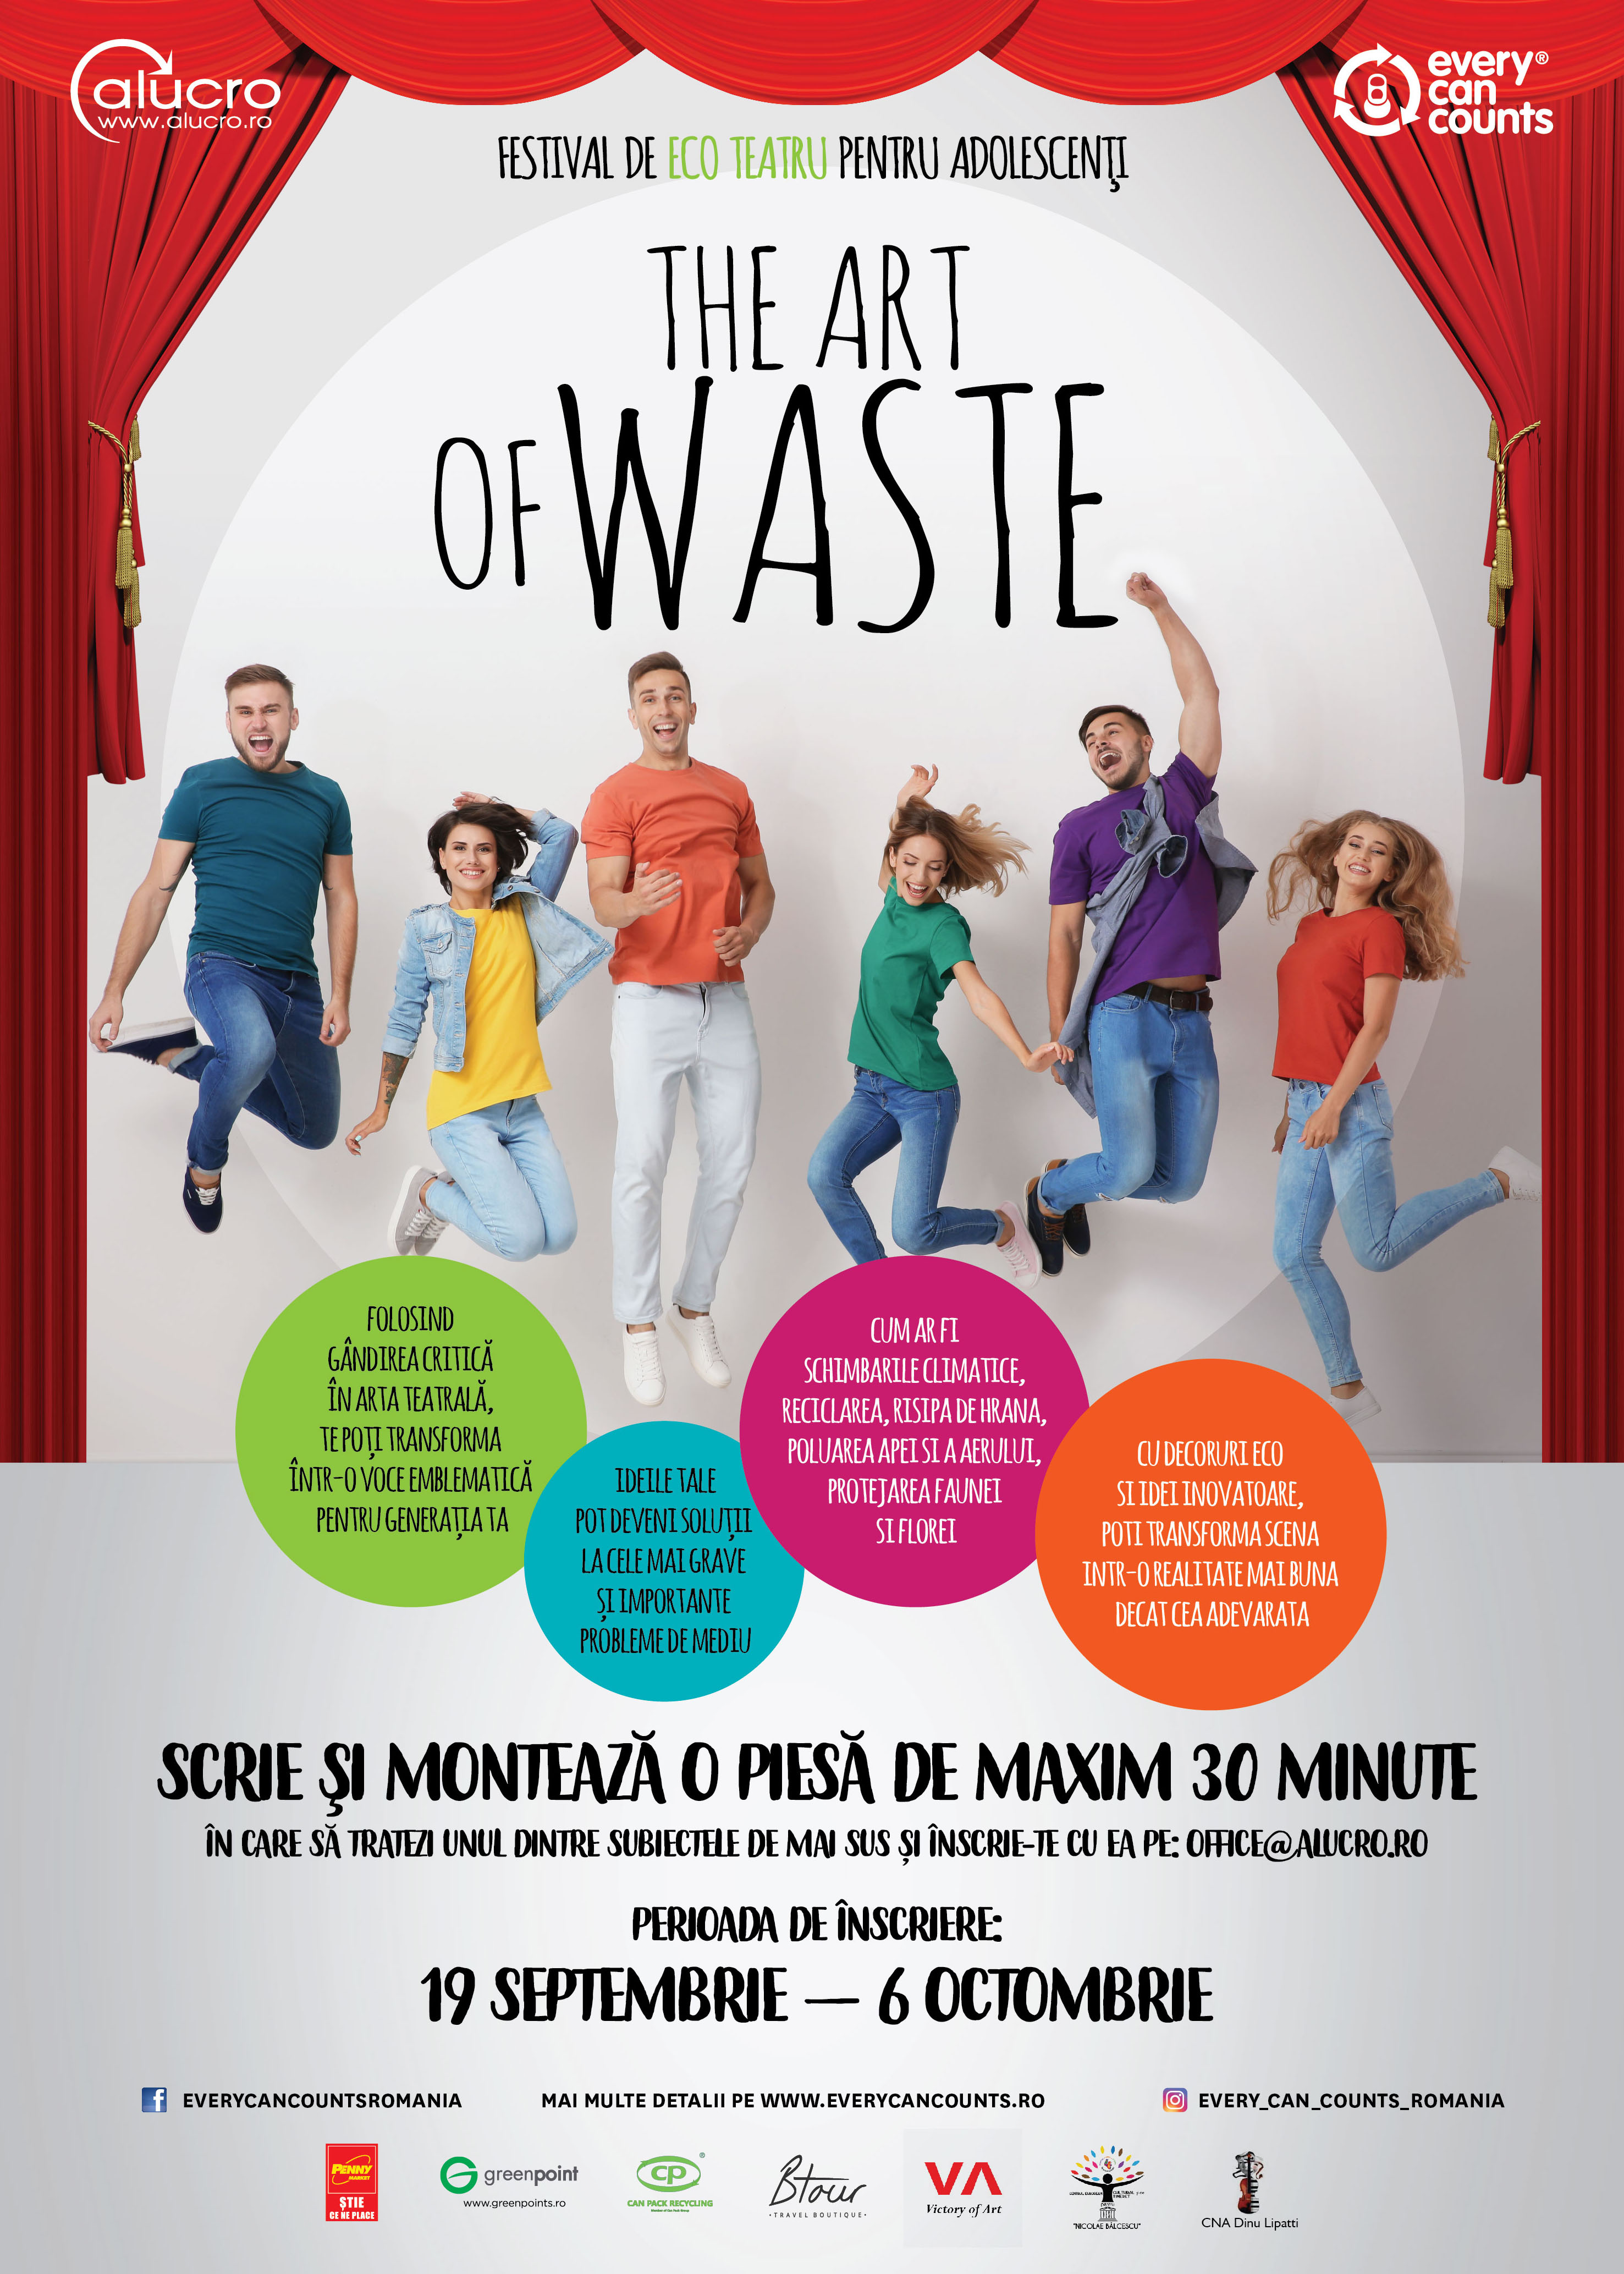 The Art of Waste – festival de eco teatru pentru adolescenţi